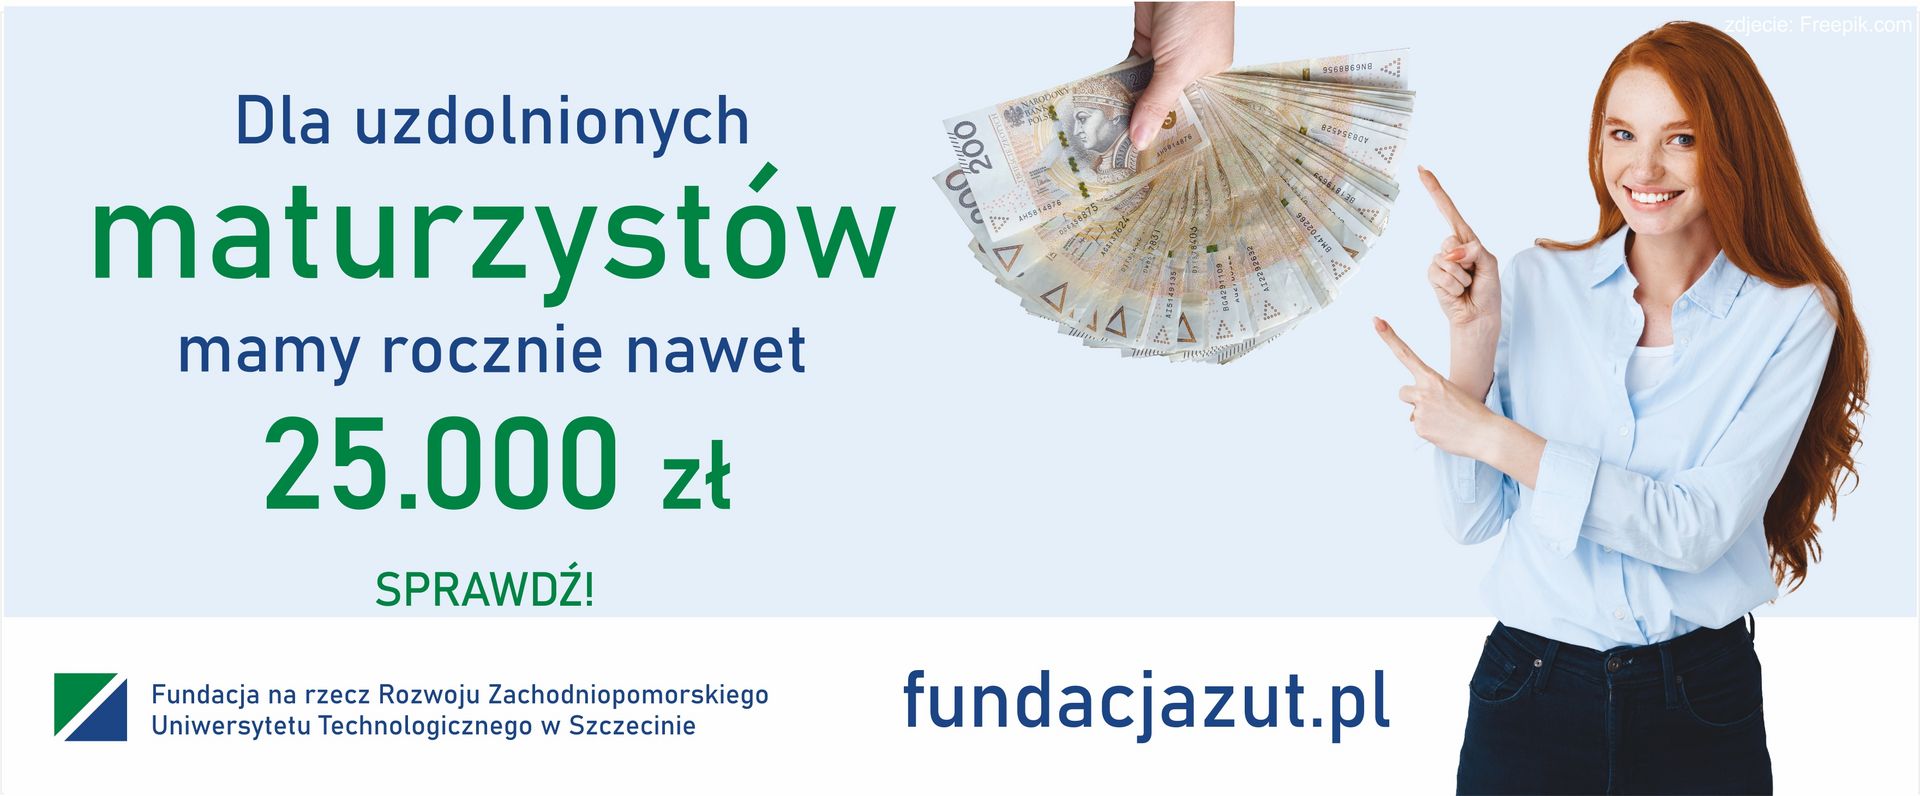 Dla uzdolnionych maturzystów mamy rocznie nawet 25.000 zł. Fundacja na rzecz Rozwoju Zachodniopomorskiego
Uniwersytetu Technologicznego w Szczecinie.